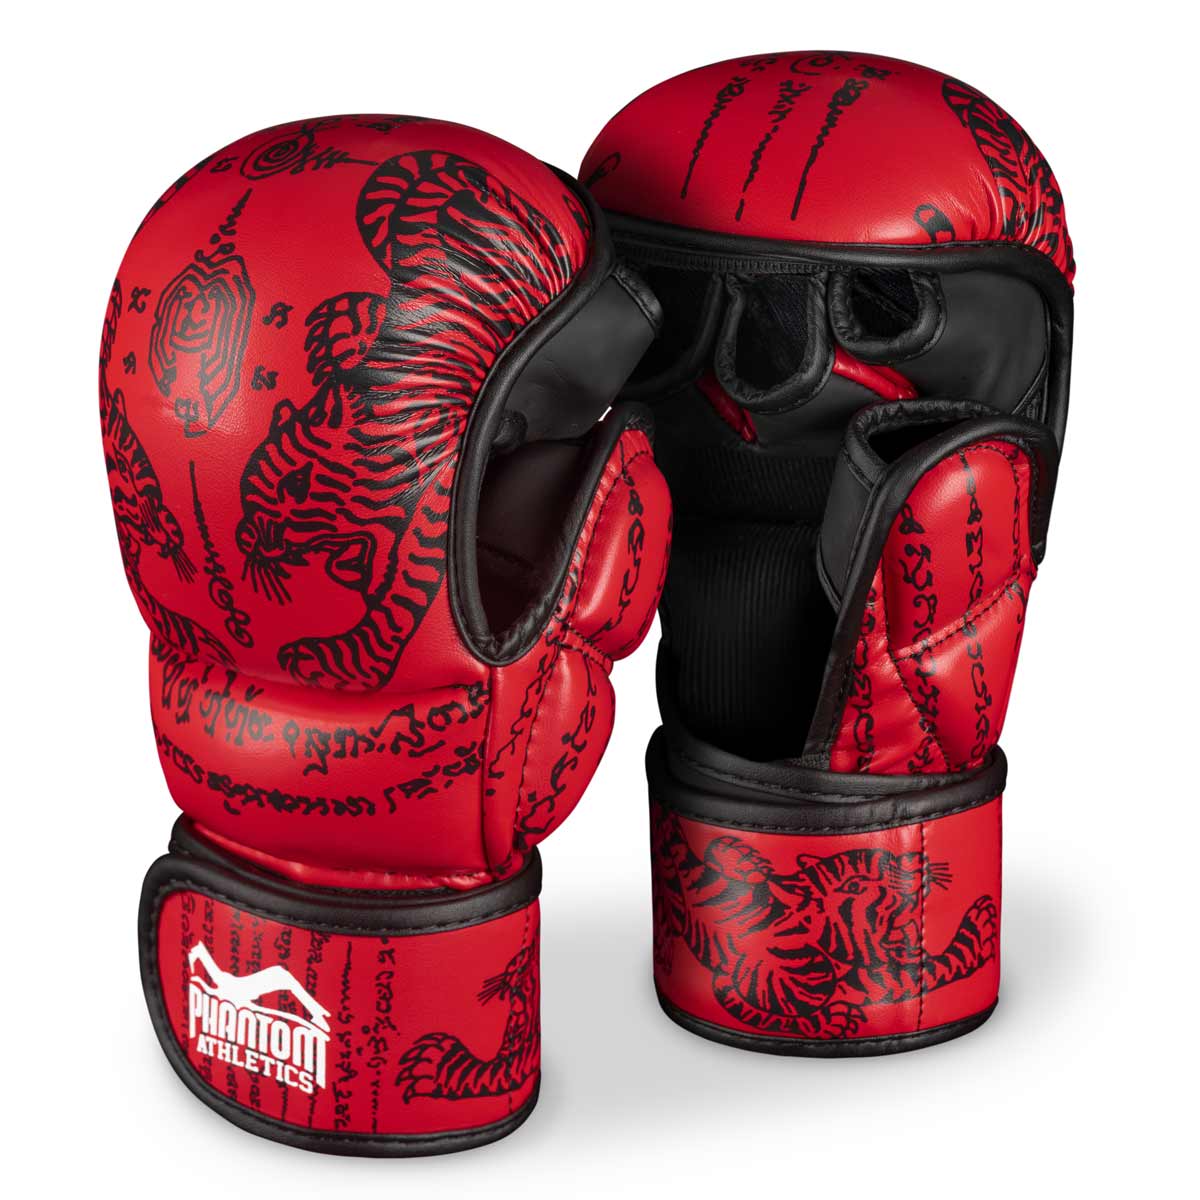 Guantes Phantom Muay Thai para sparring, competición y entrenamiento de boxeo tailandés y MMA. Con el diseño tradicional de Sak Yant y el color rojo.